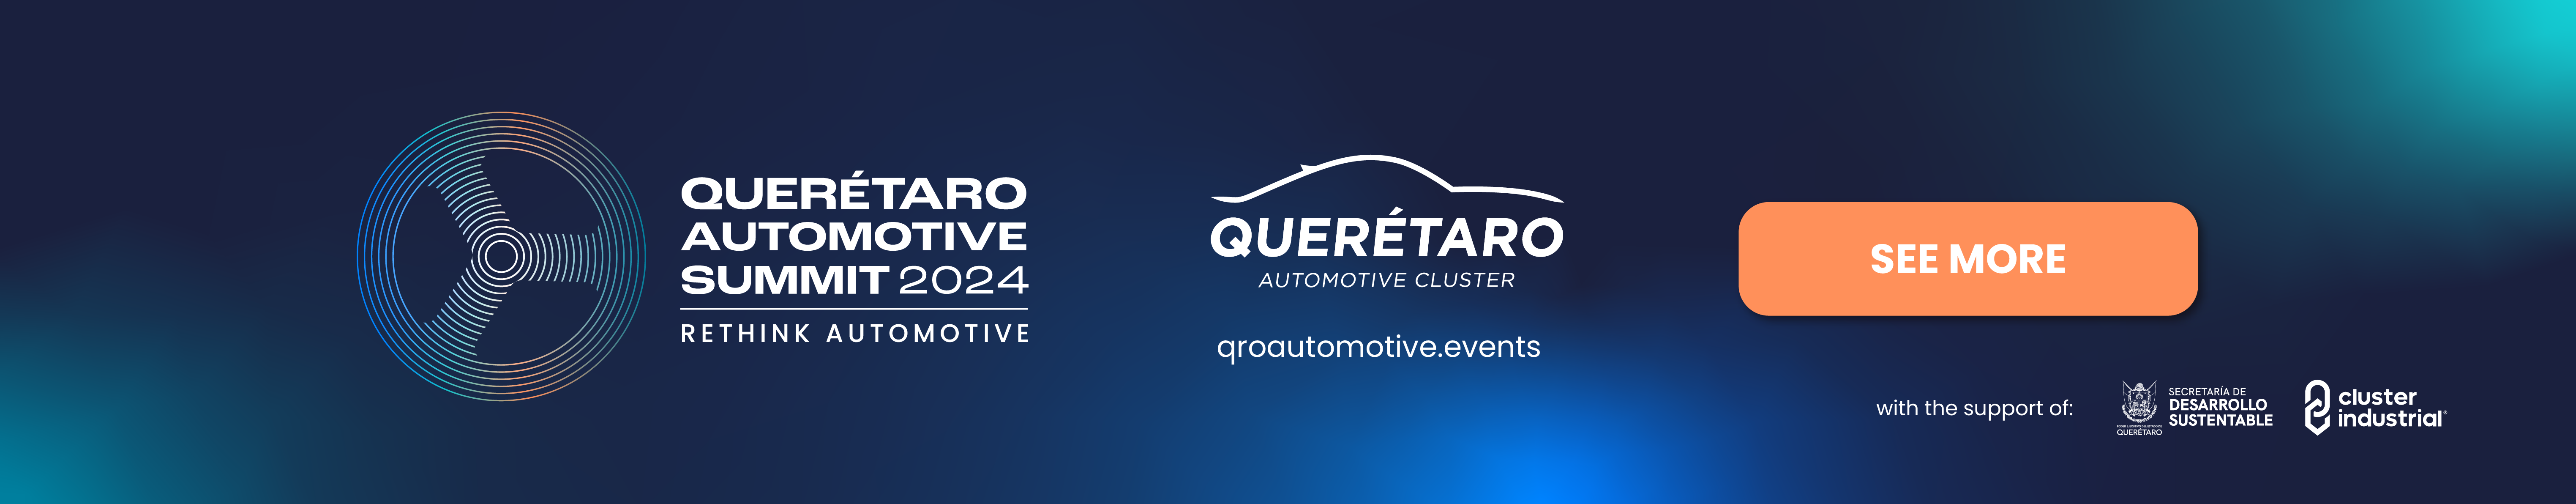 Querétaro Automotive Summit 2024